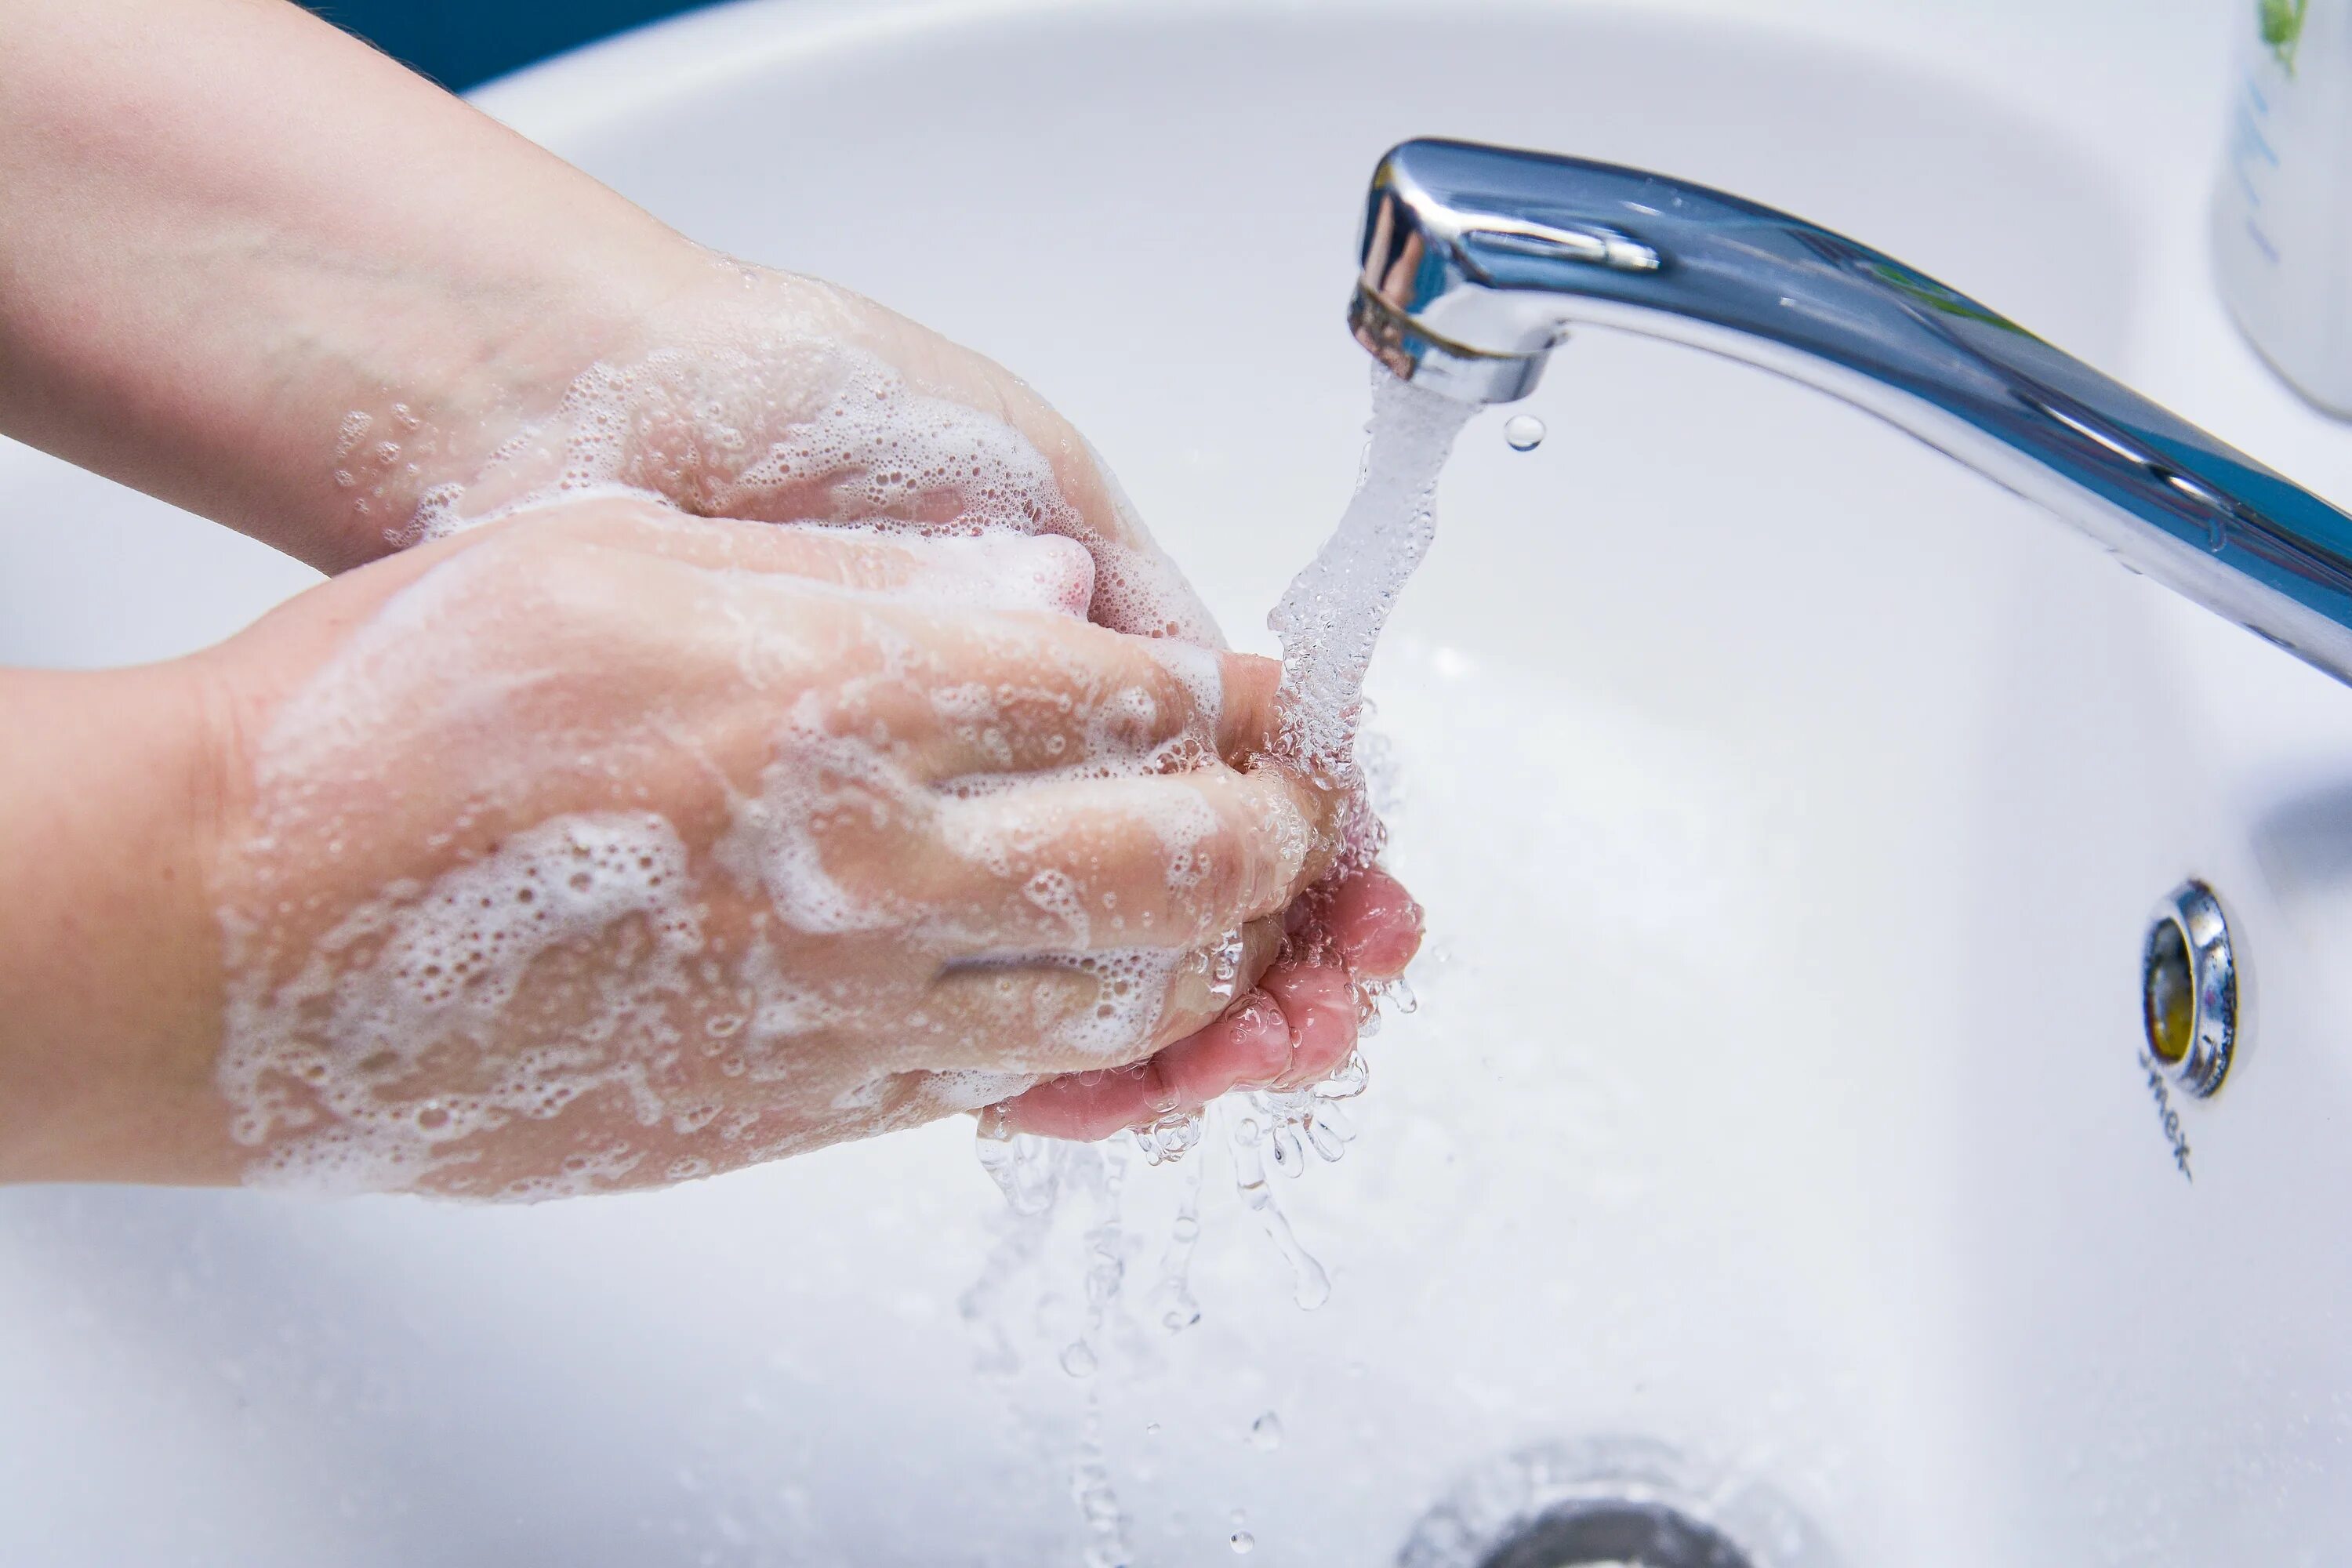 Мытье рук. Мытье рук с мылом. Мыло для рук. Мыть руки. Мою руки 3 минуты